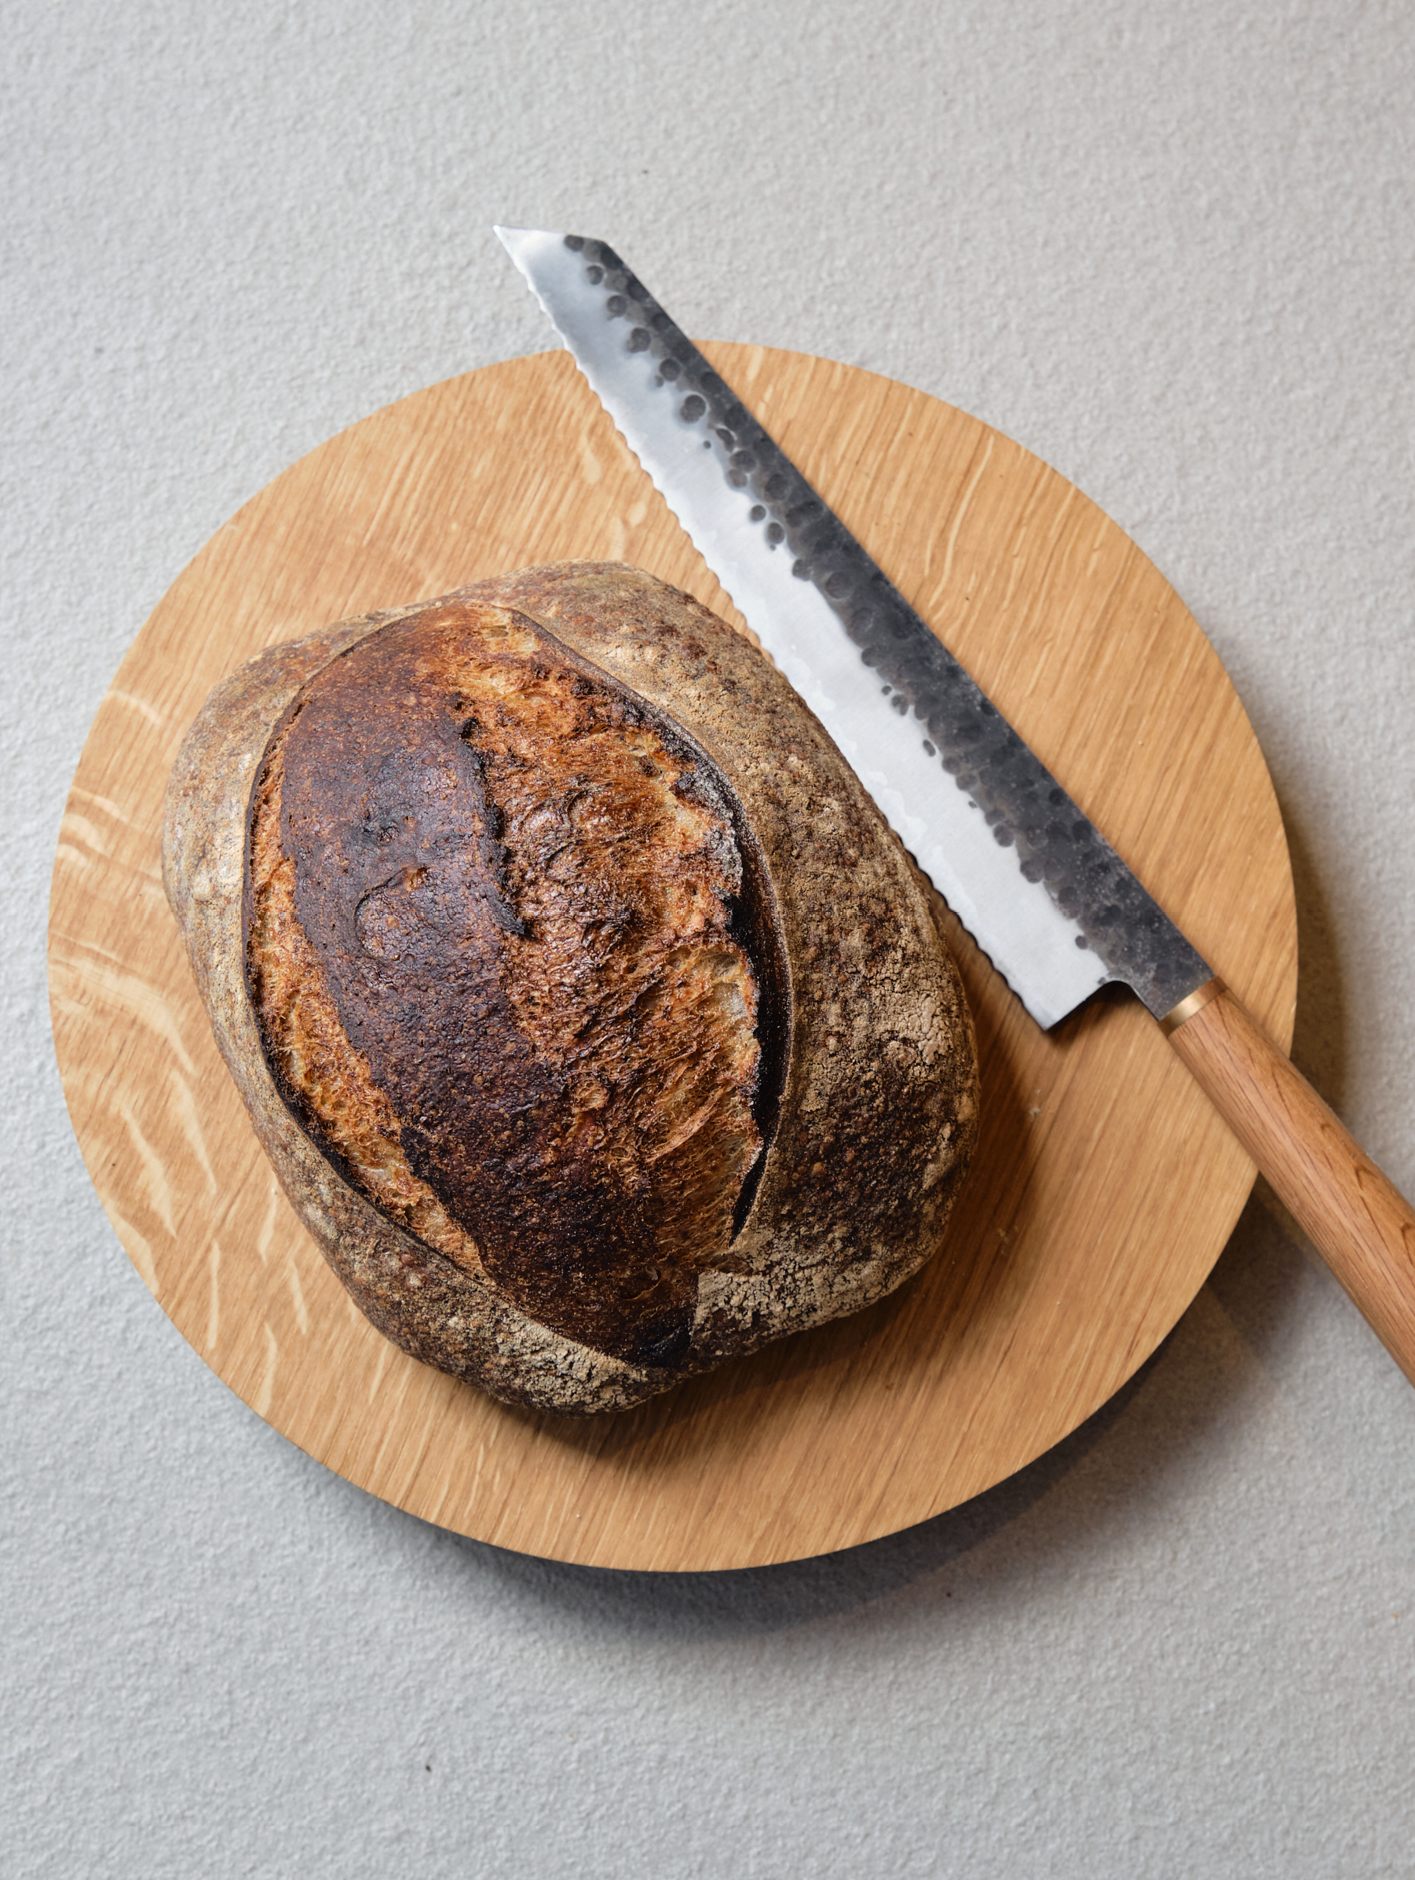 Pophams x Katto oak handle bread knife